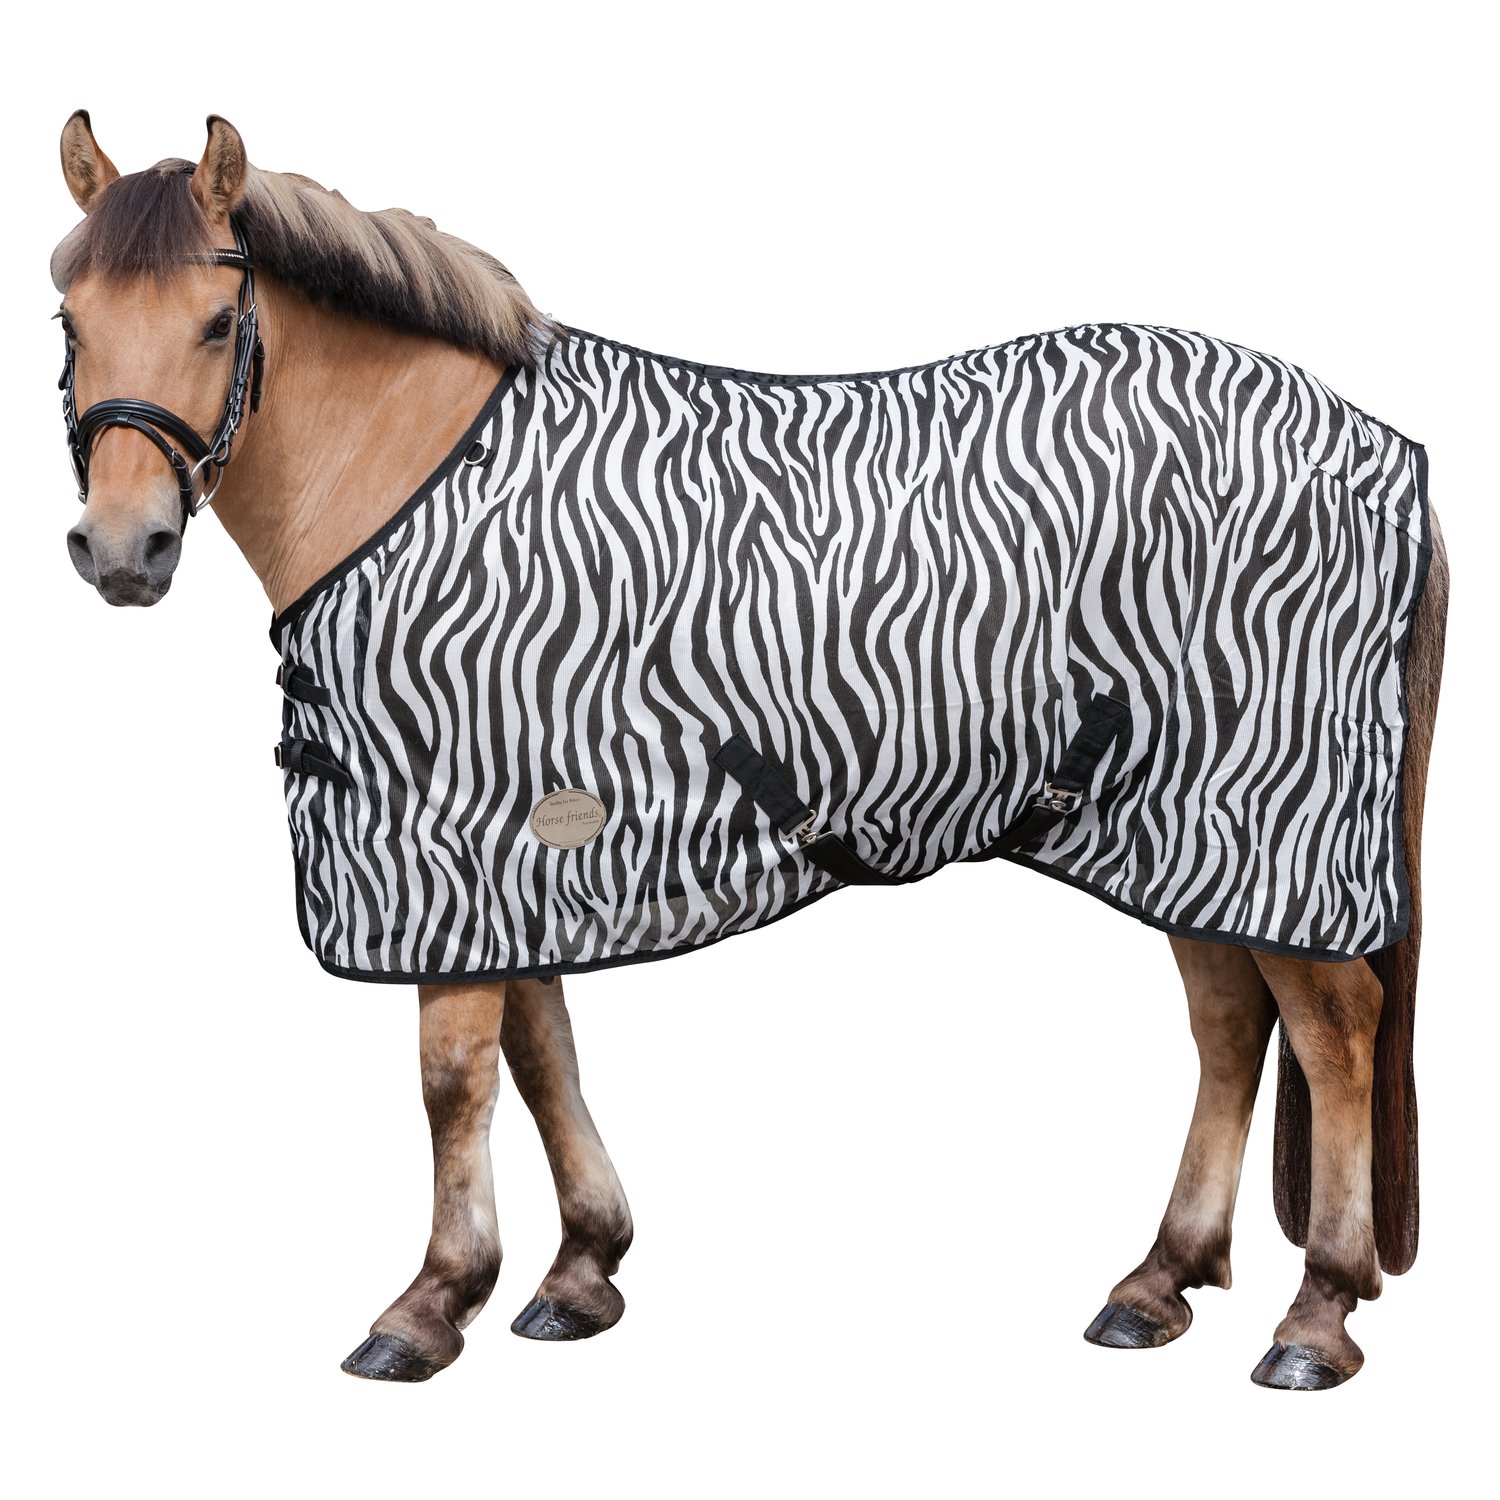 Horse-friends Fliegendecke mit Zebra-Muster zebra | 135 cm